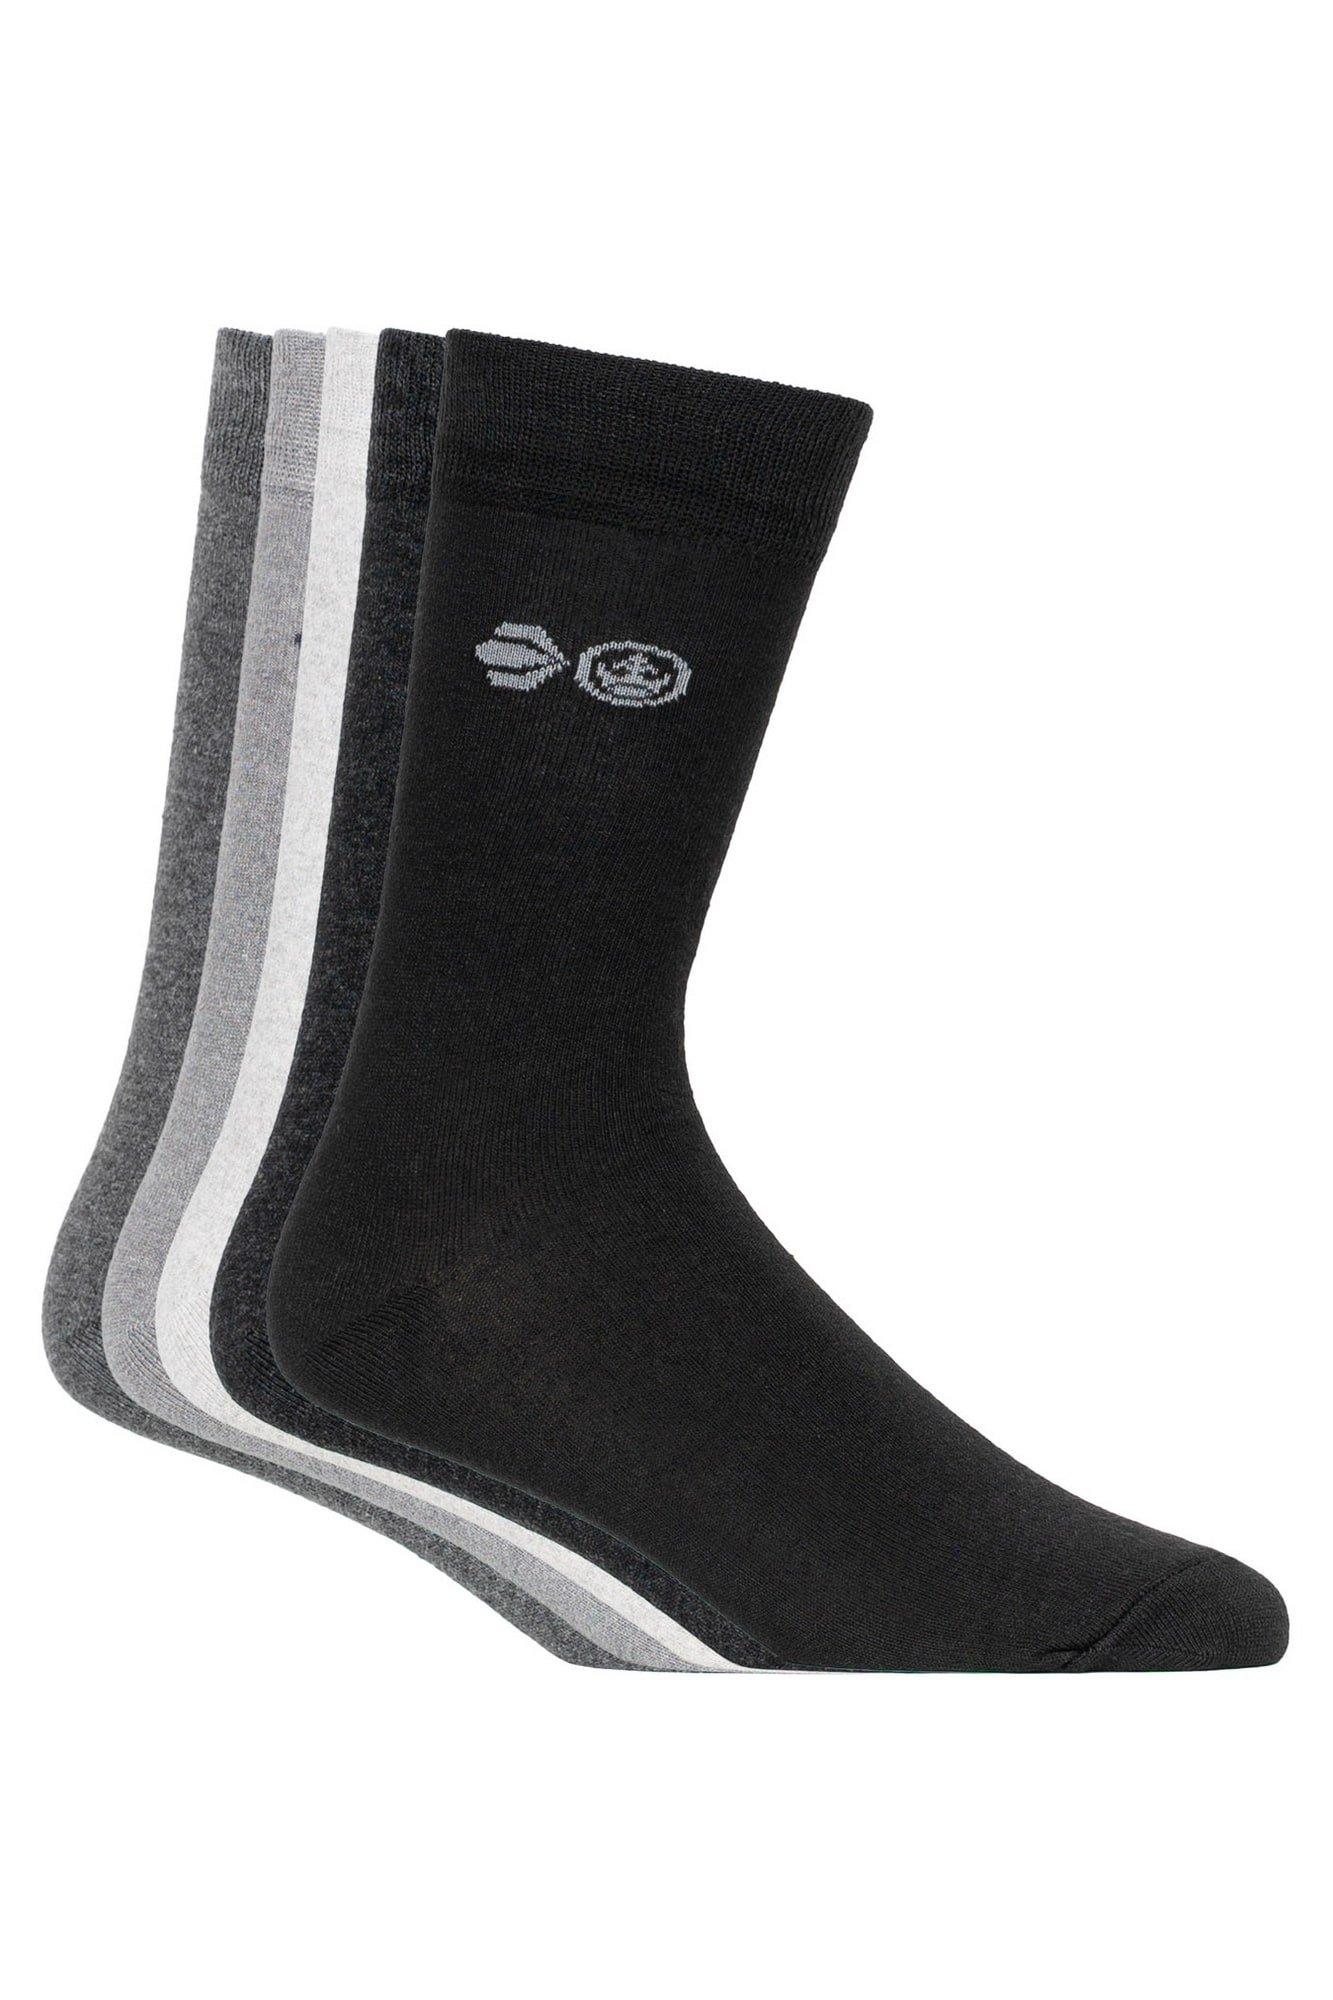 Overcast Regen Socks (Pack of 5)